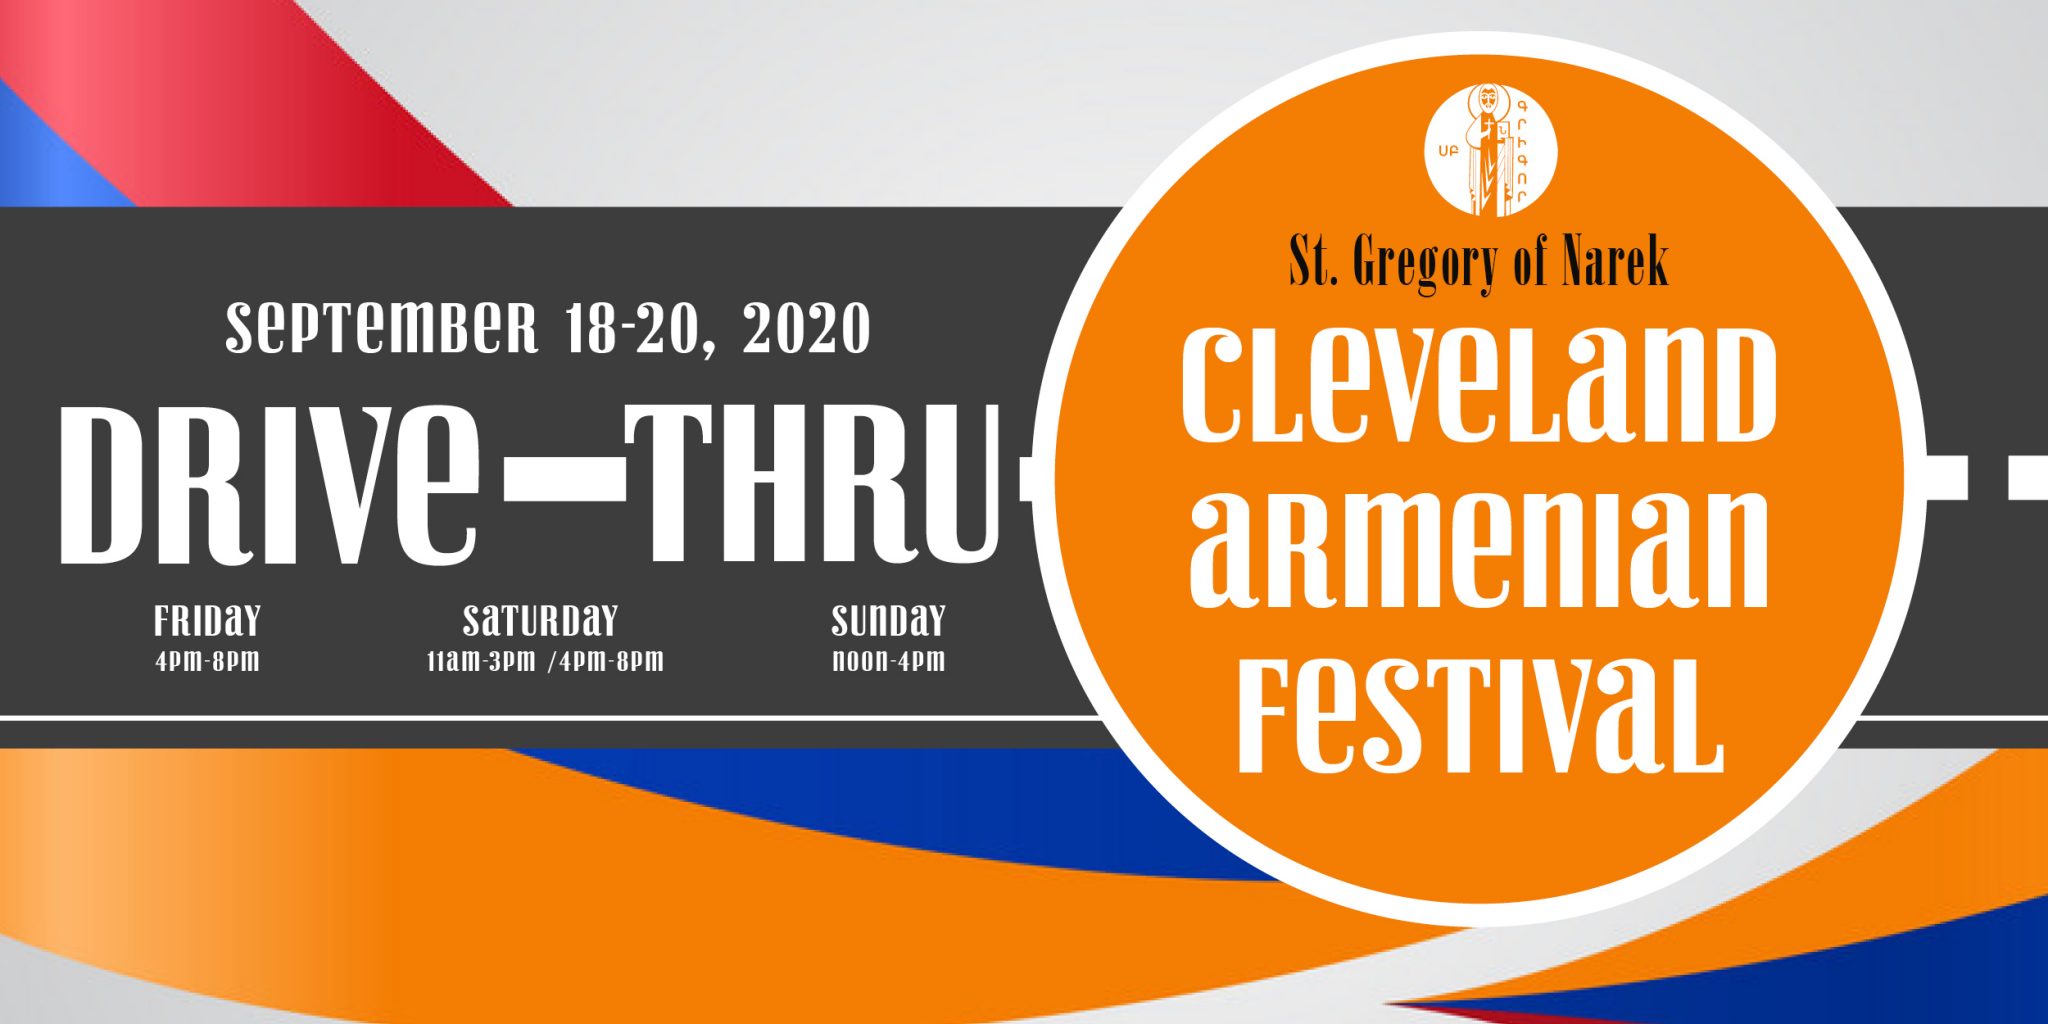 Cleveland Armenian Festival St. Gregory Of Narek